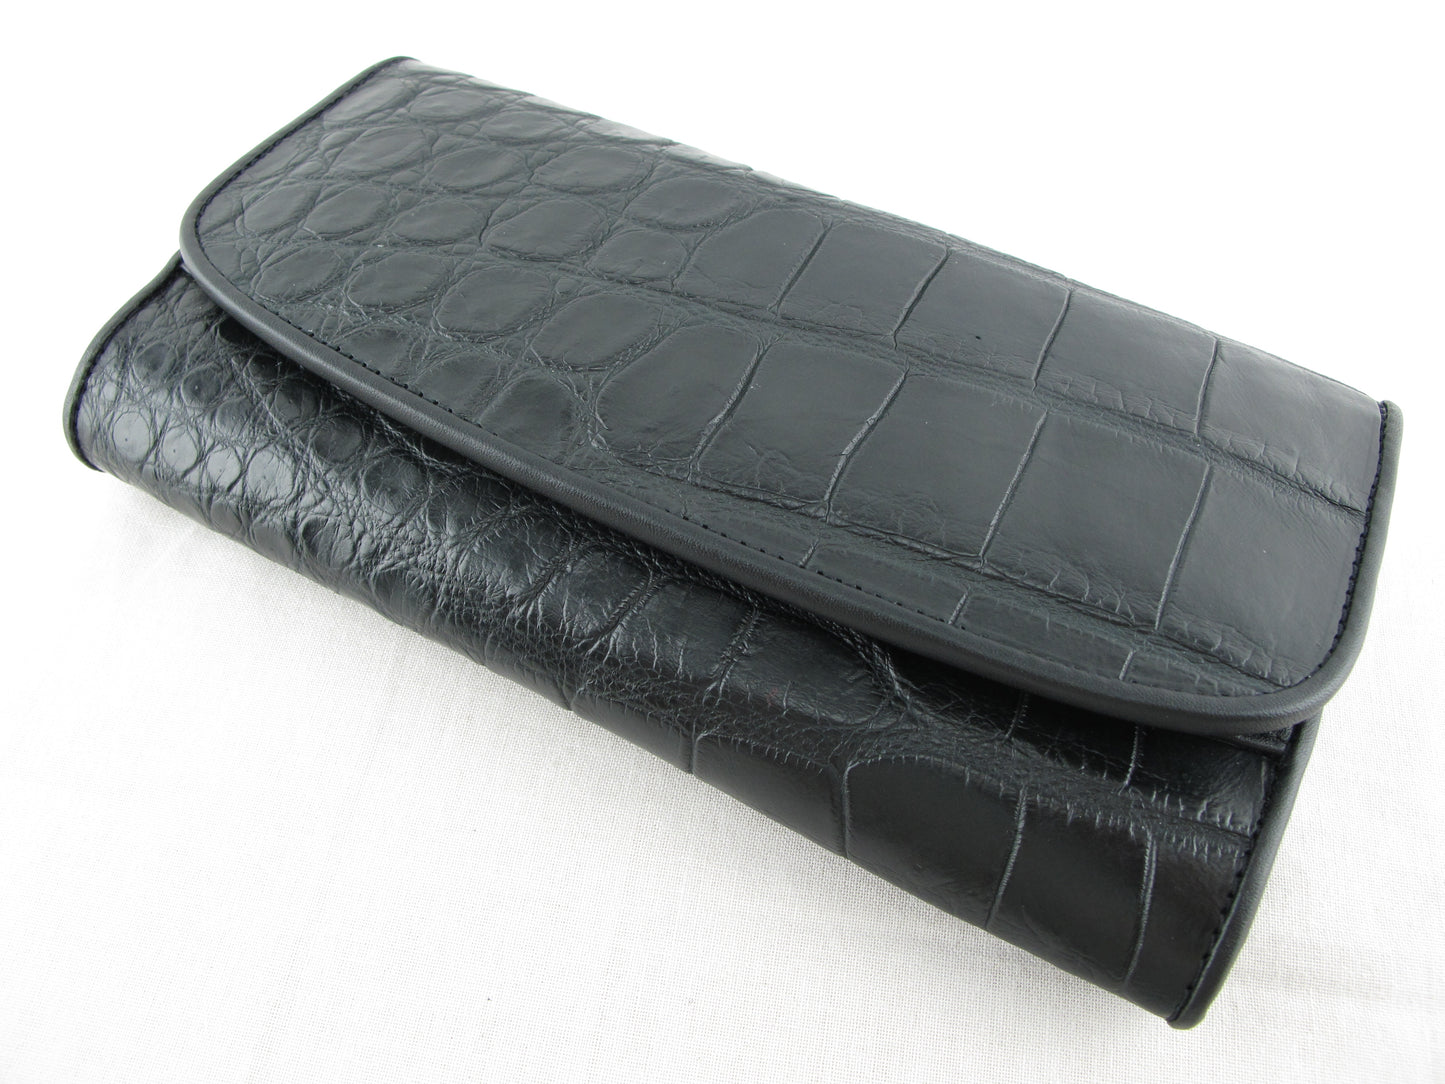 Genuine Crocodile Belly Skin Leather Women's Trifold Clutch Wallet Purse